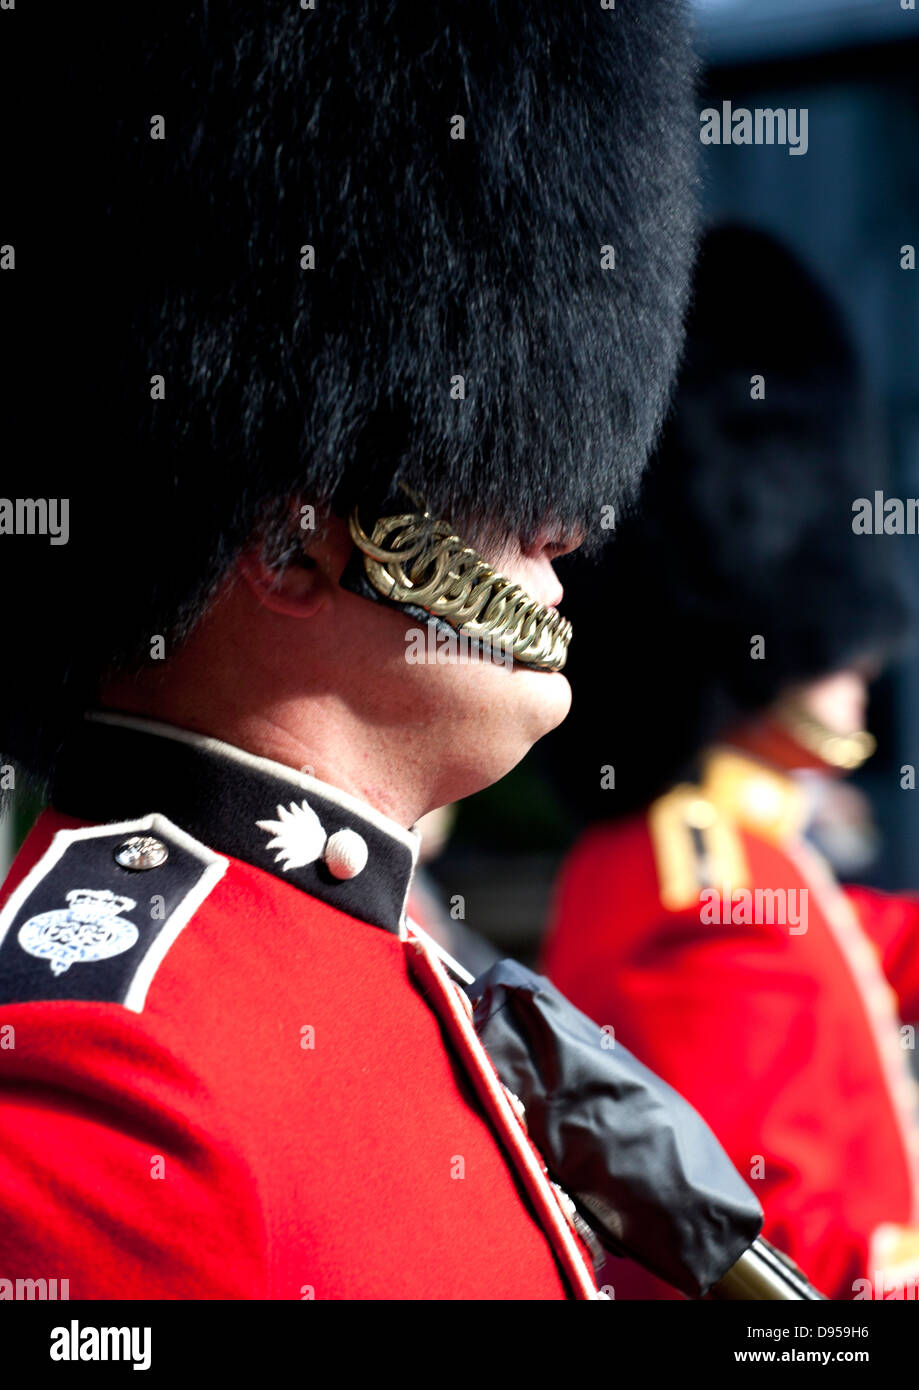 Royal guards close up, England UK Stock Photo